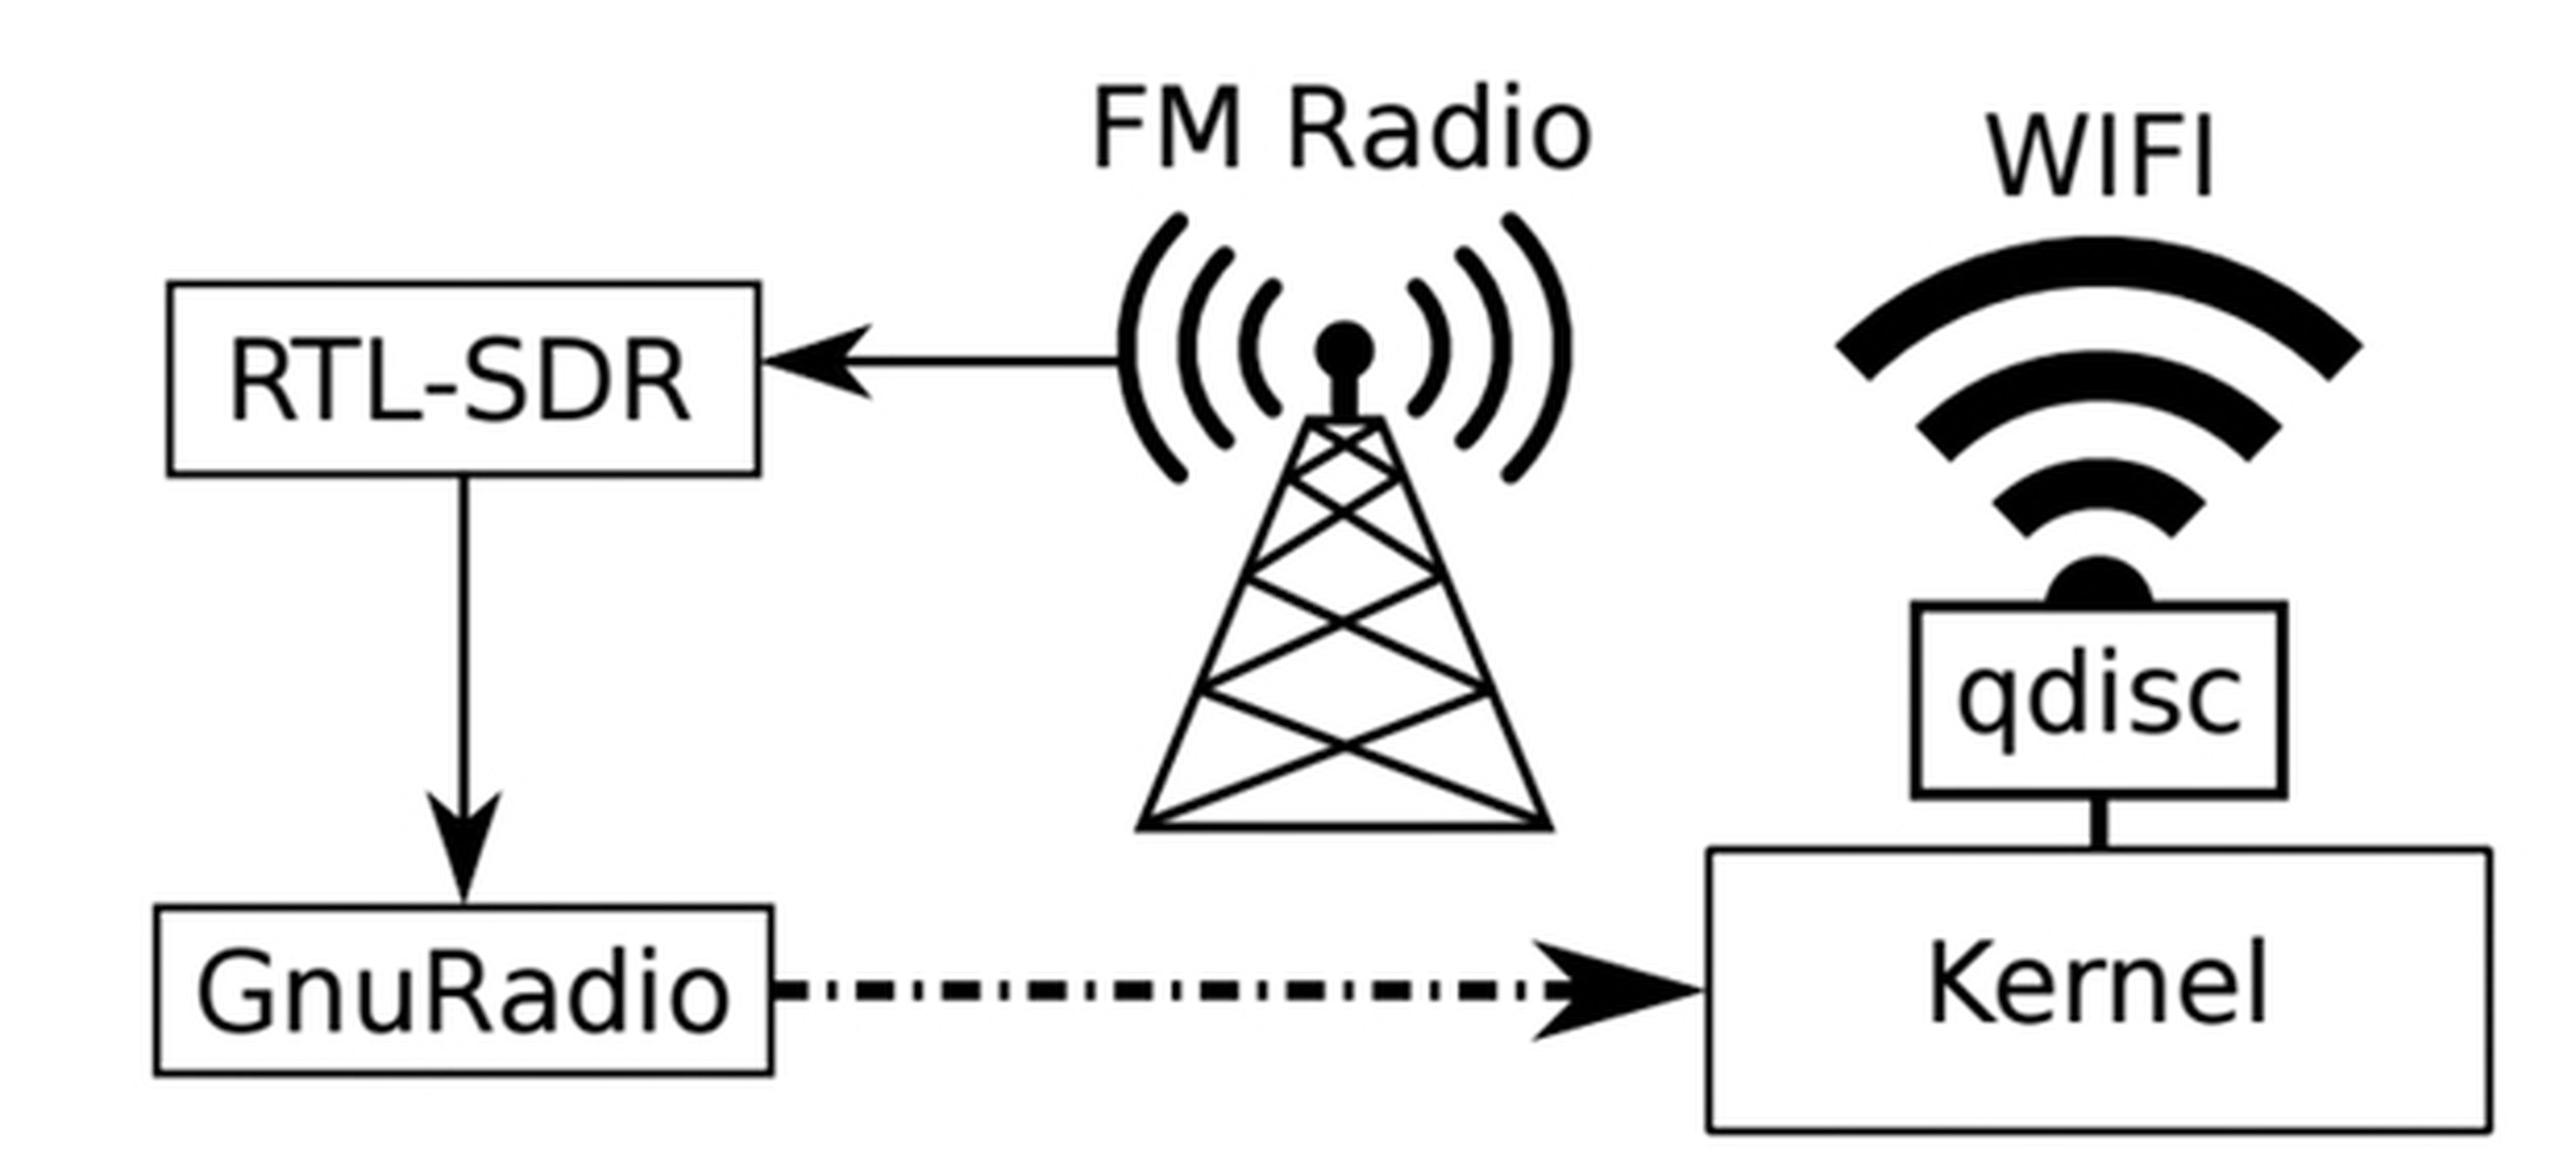 Radio FM Wifi